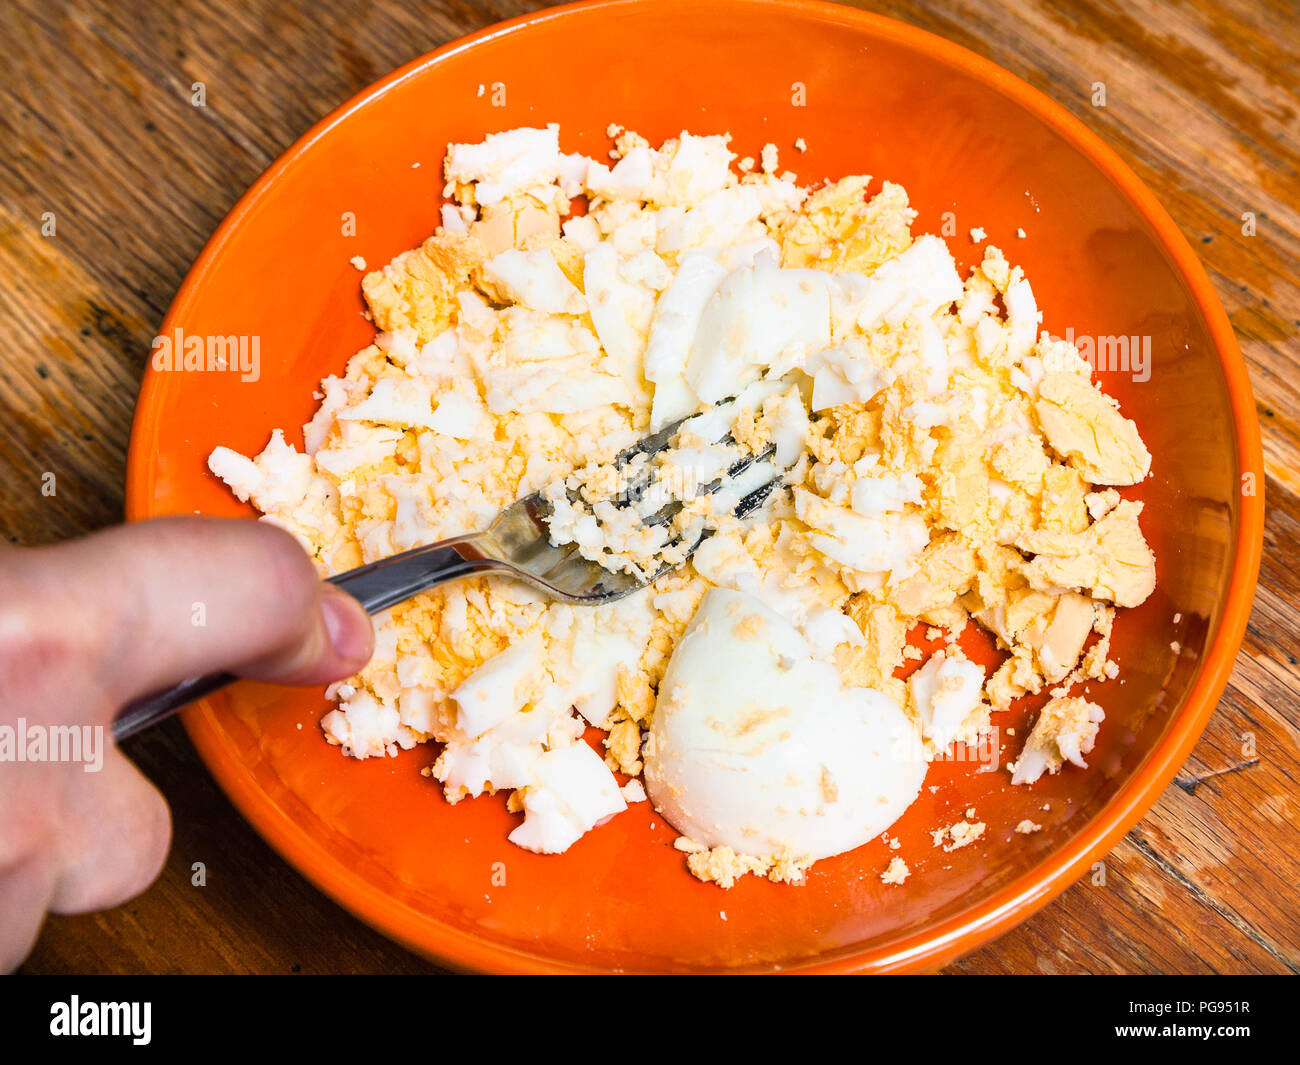 Crushing thick crunchy eggs